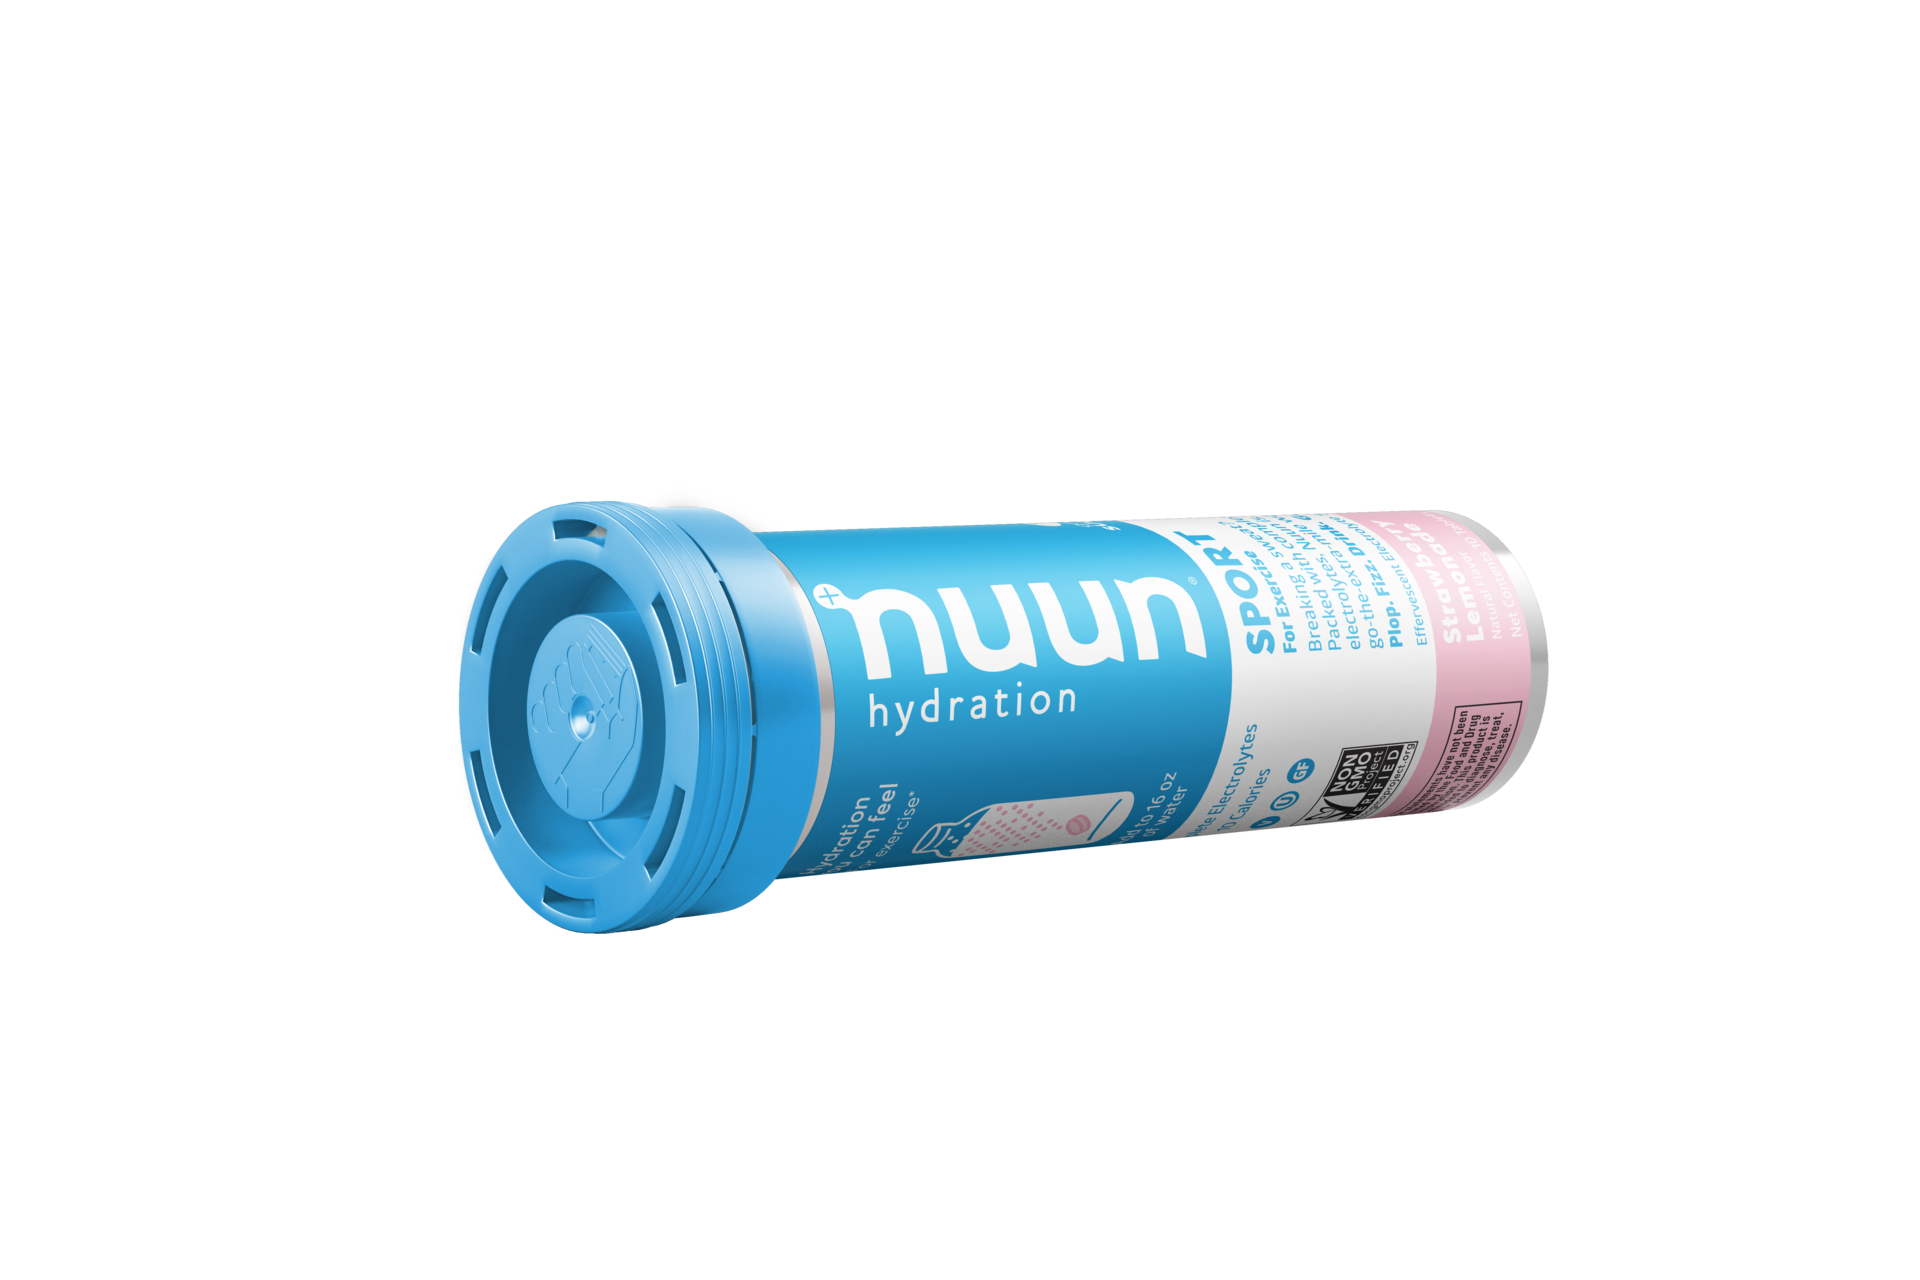 Nuun Sport Tabletten Aardbei /Limonade 8 x 10 stuks